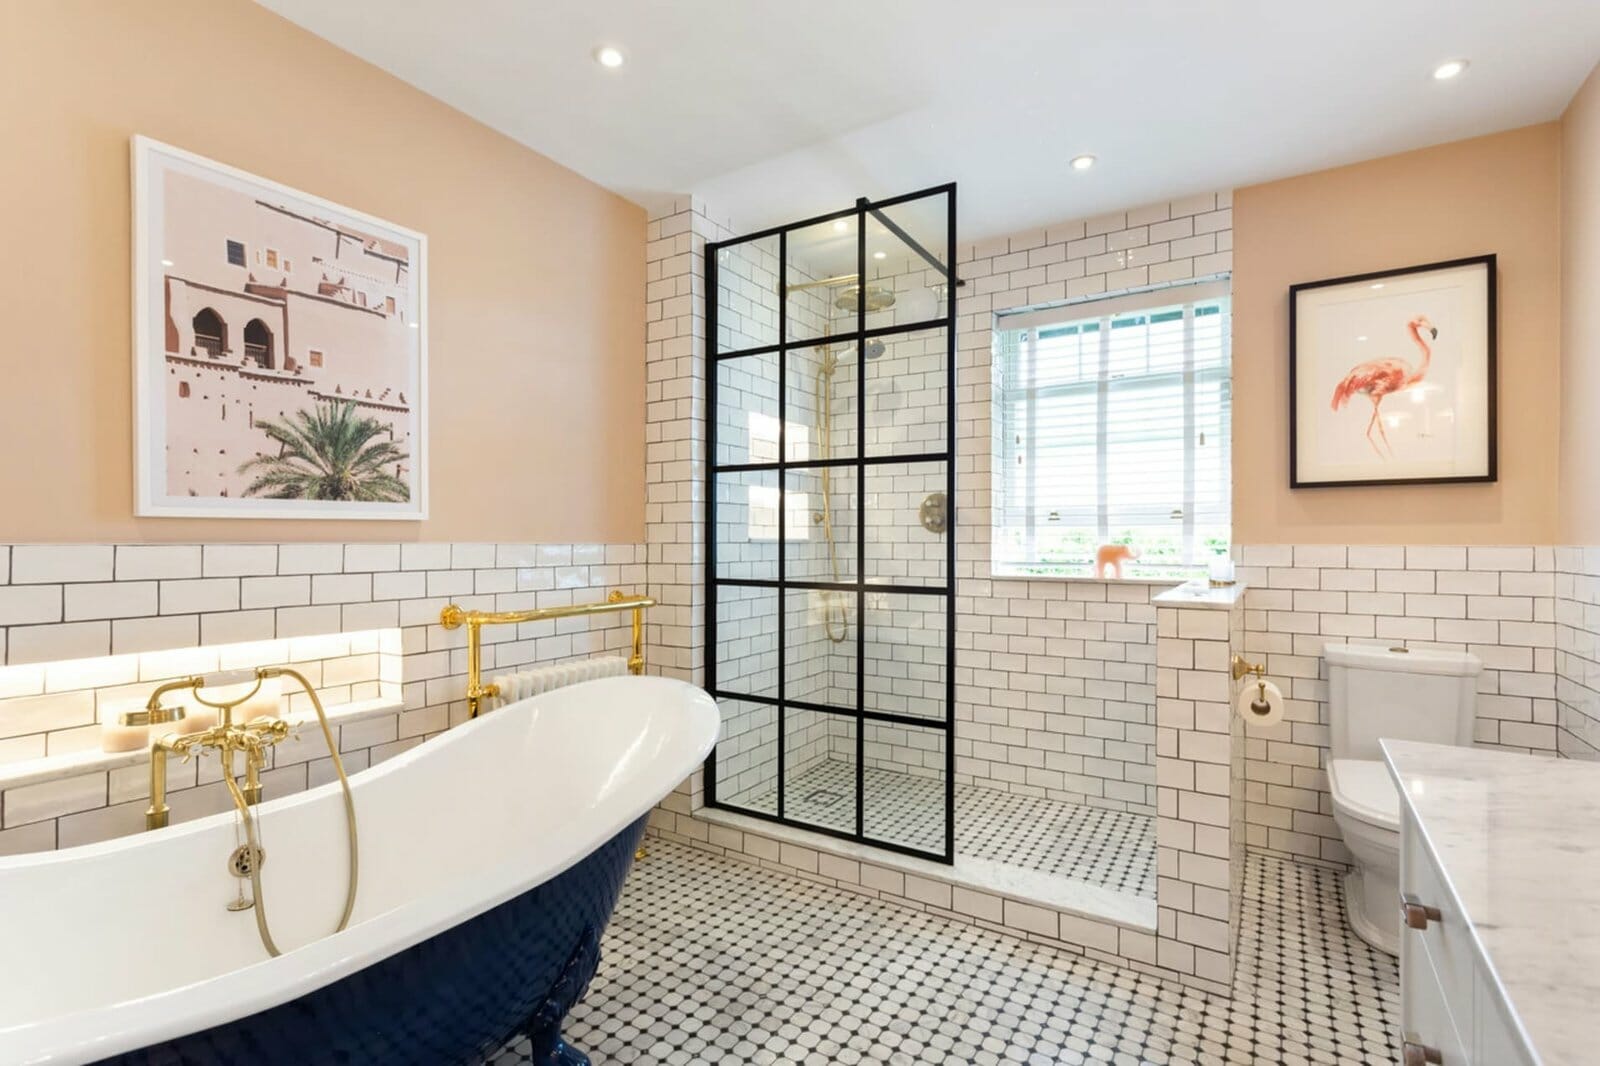 20 Bathroom Tile Ideas You Ll Want To, Shower Bathtub Tile Ideas